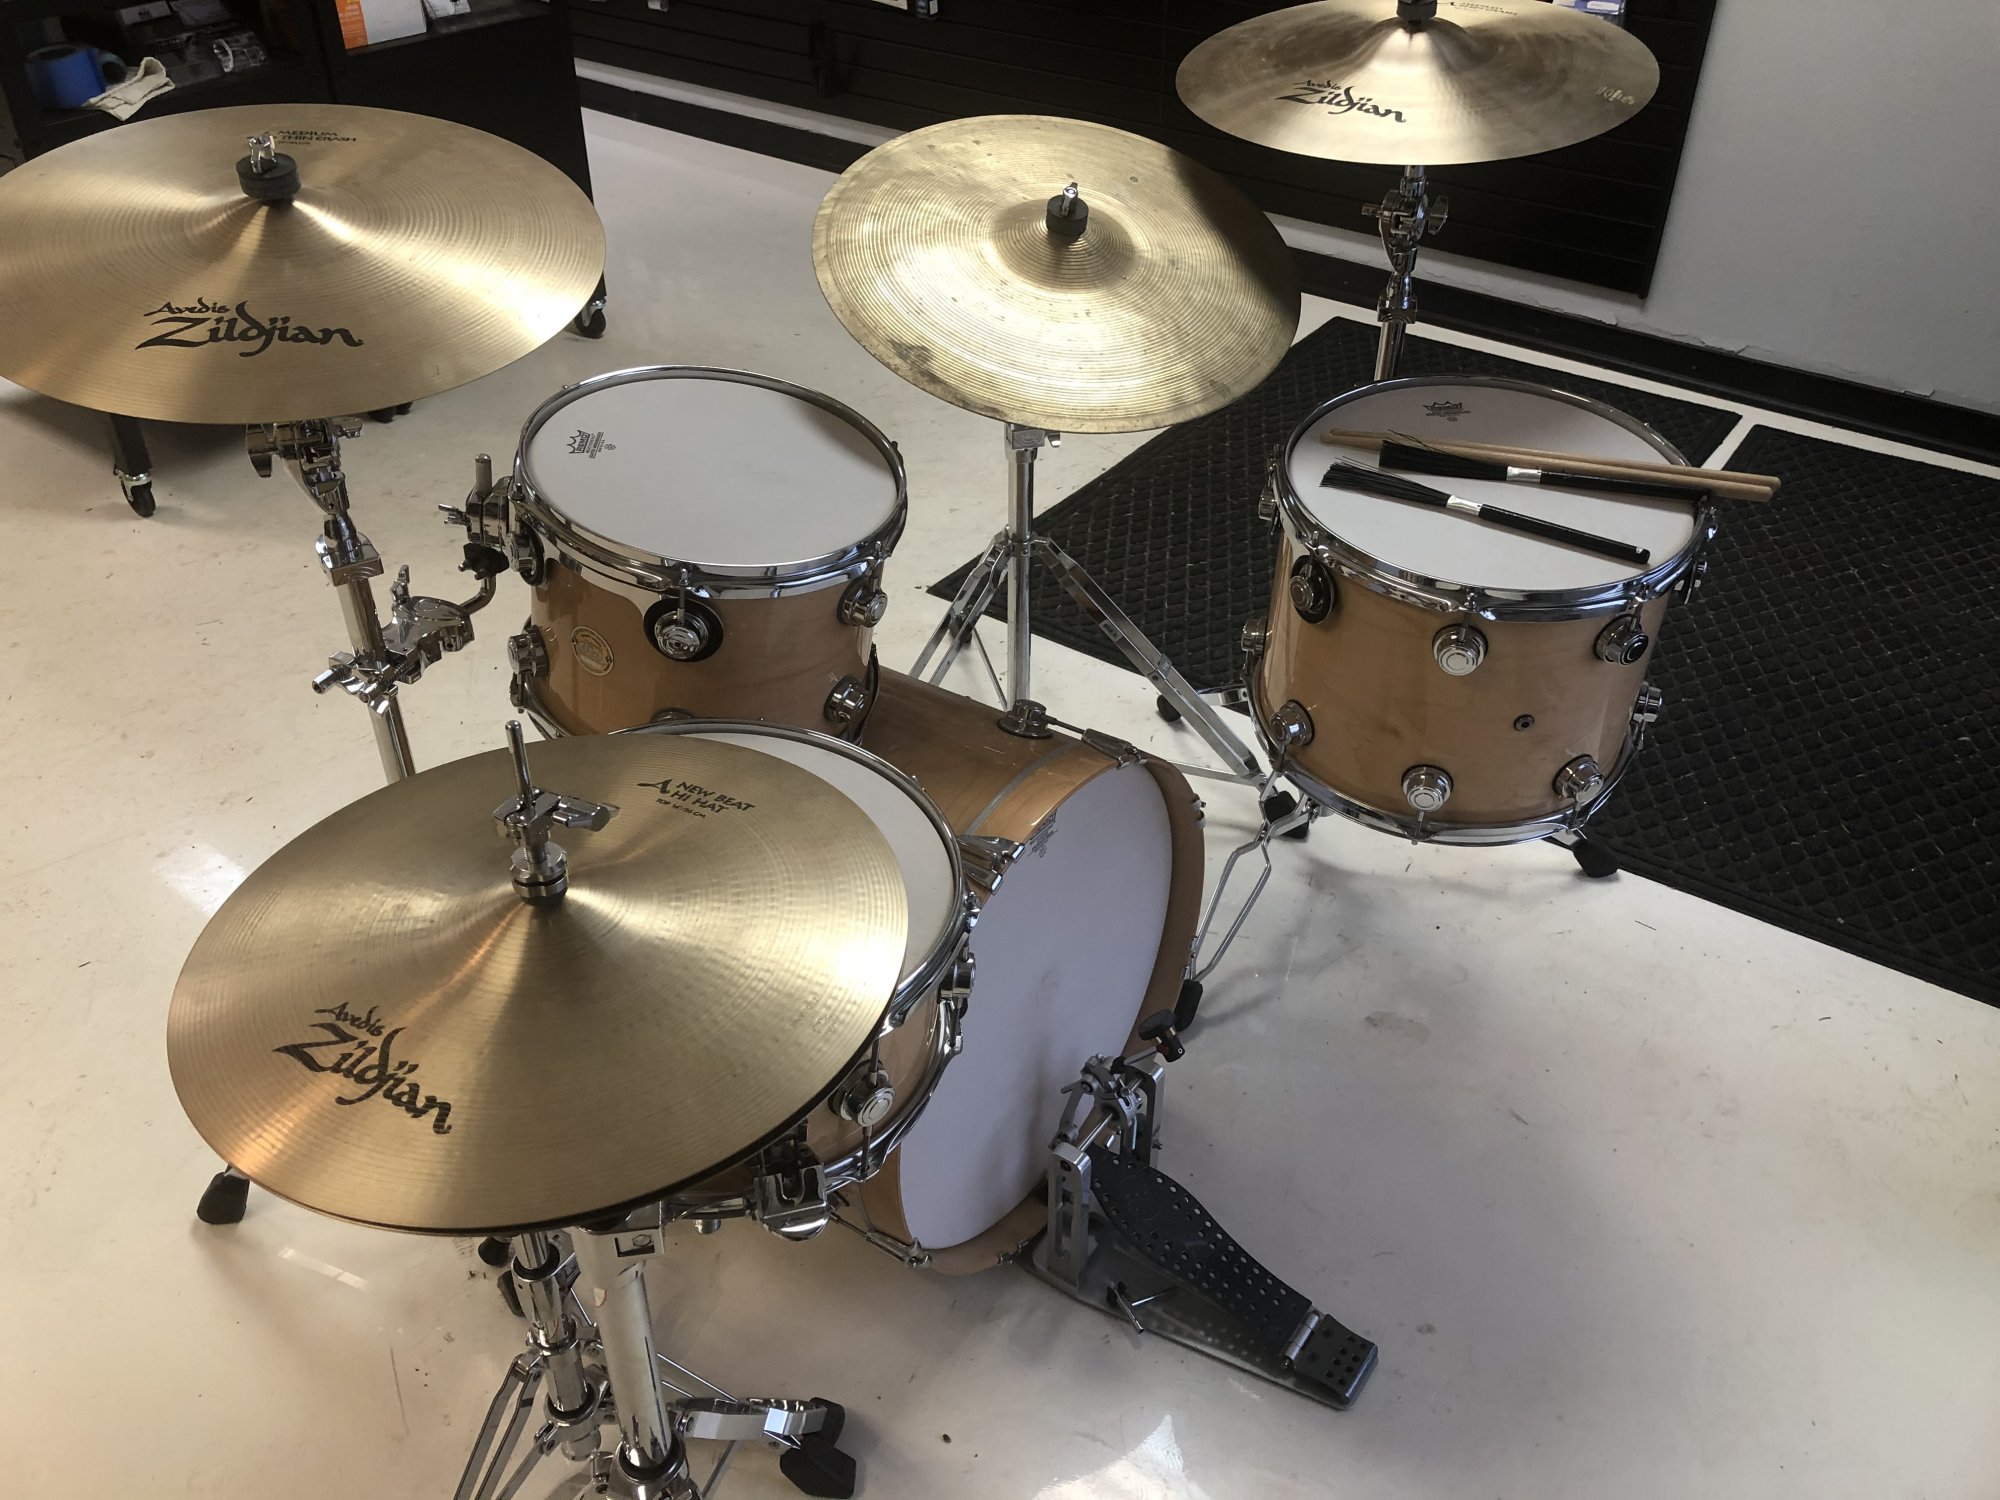 Used Drums